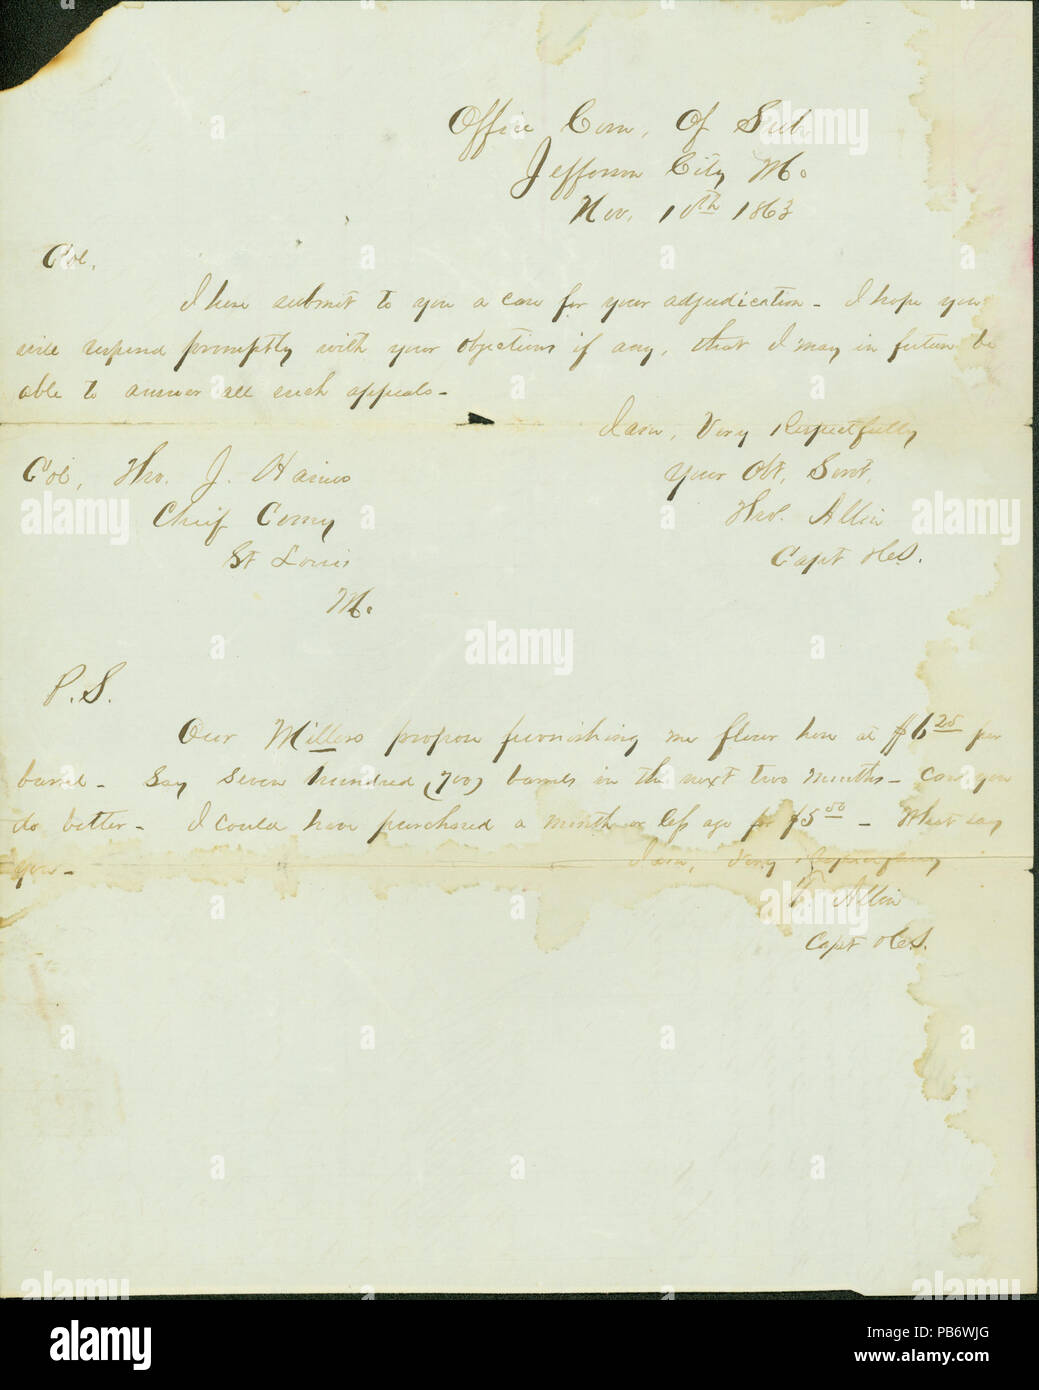 1119 Nota firmata Thomas Allin, Ufficio spaccio di sussistenza, Jefferson City, Mo., al colonnello Thomas J. Harris, St. Louis, Mo., Novembre 10, 1863 Foto Stock